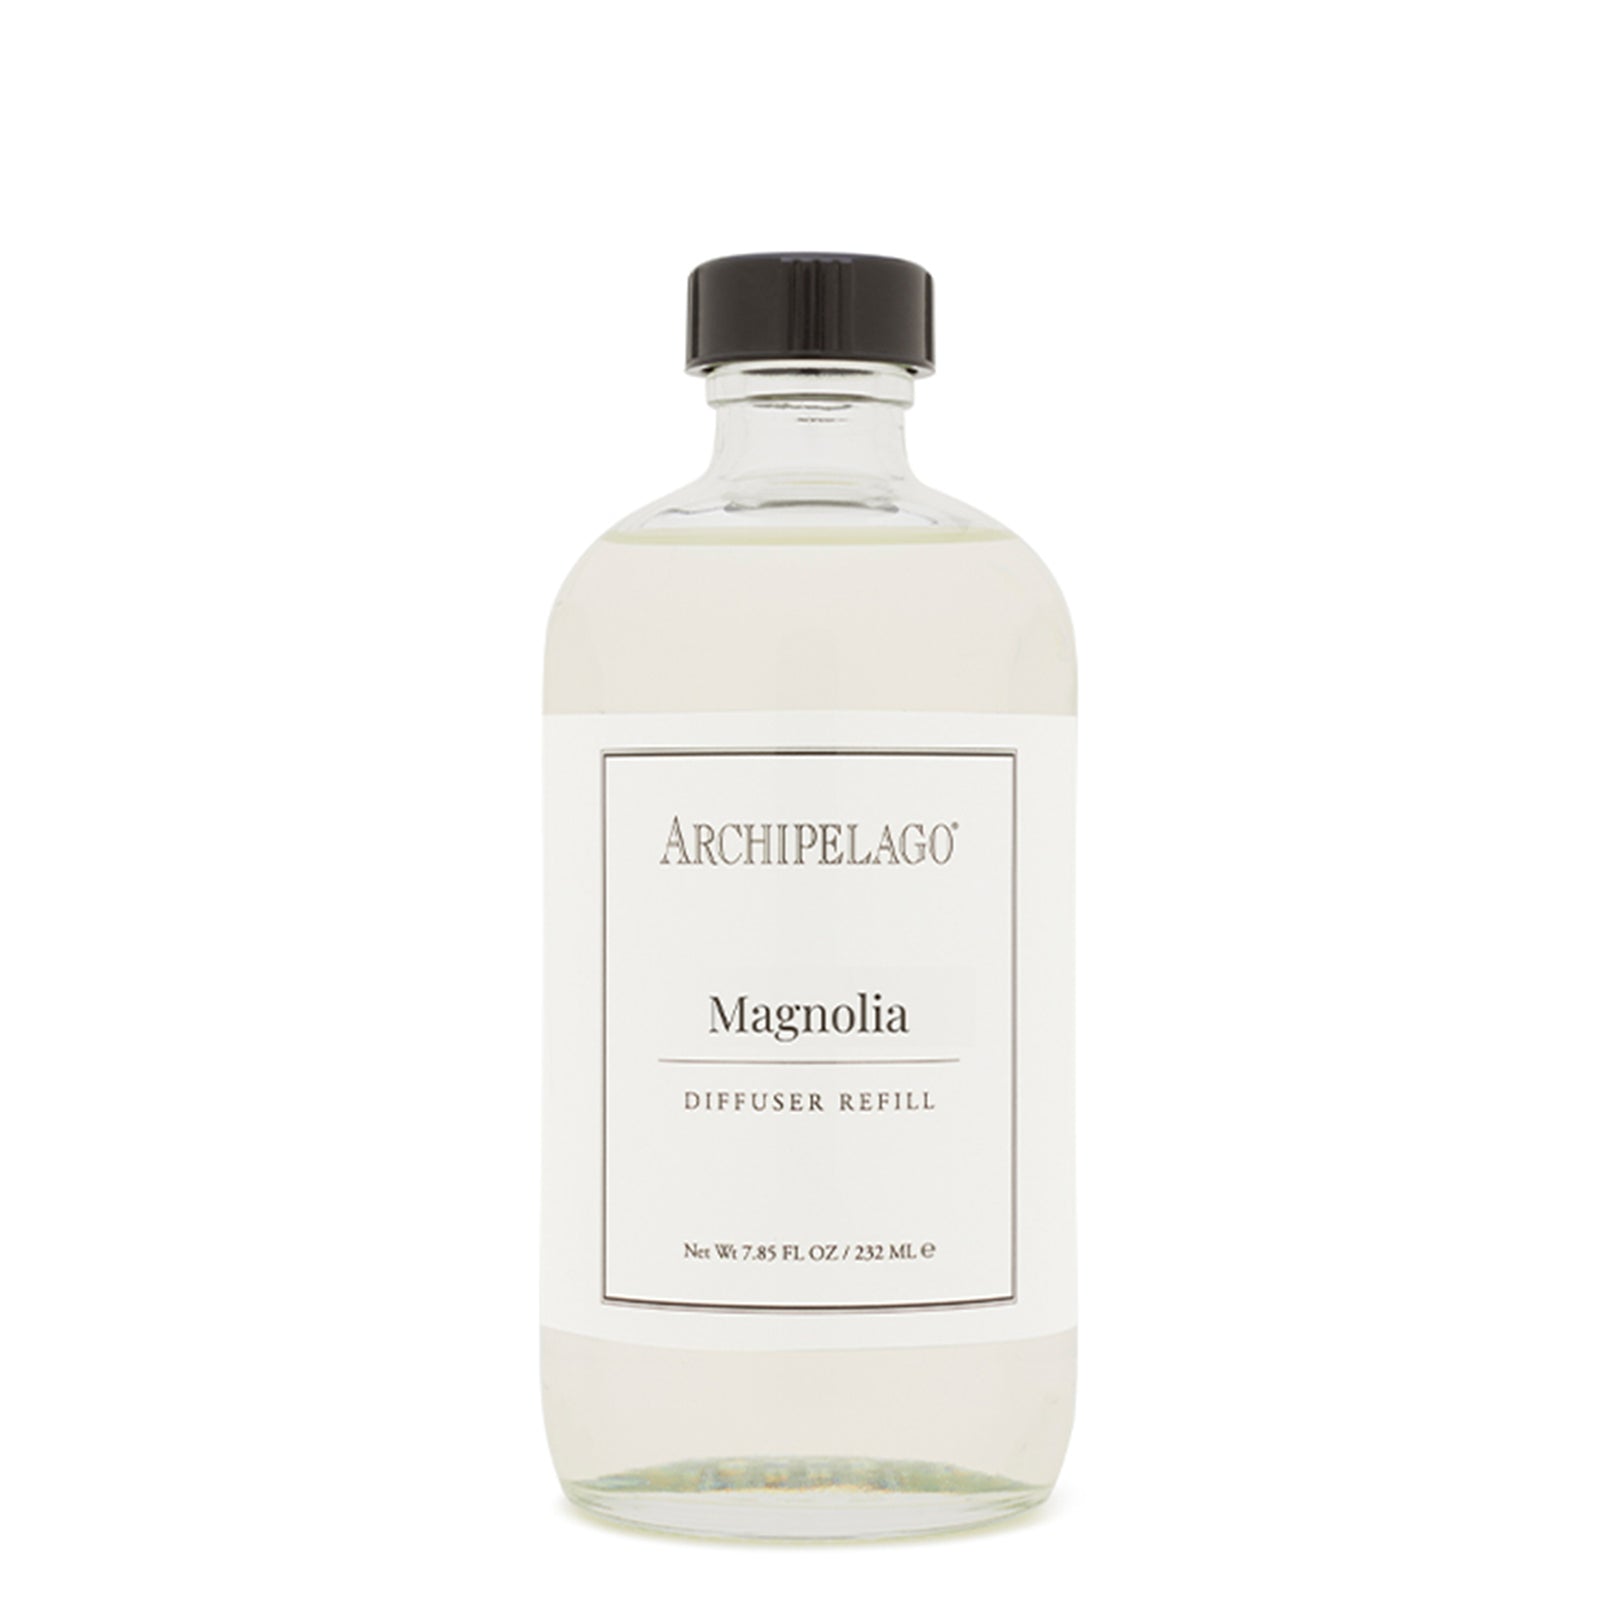 Magnolia Diffuser Oil Refill